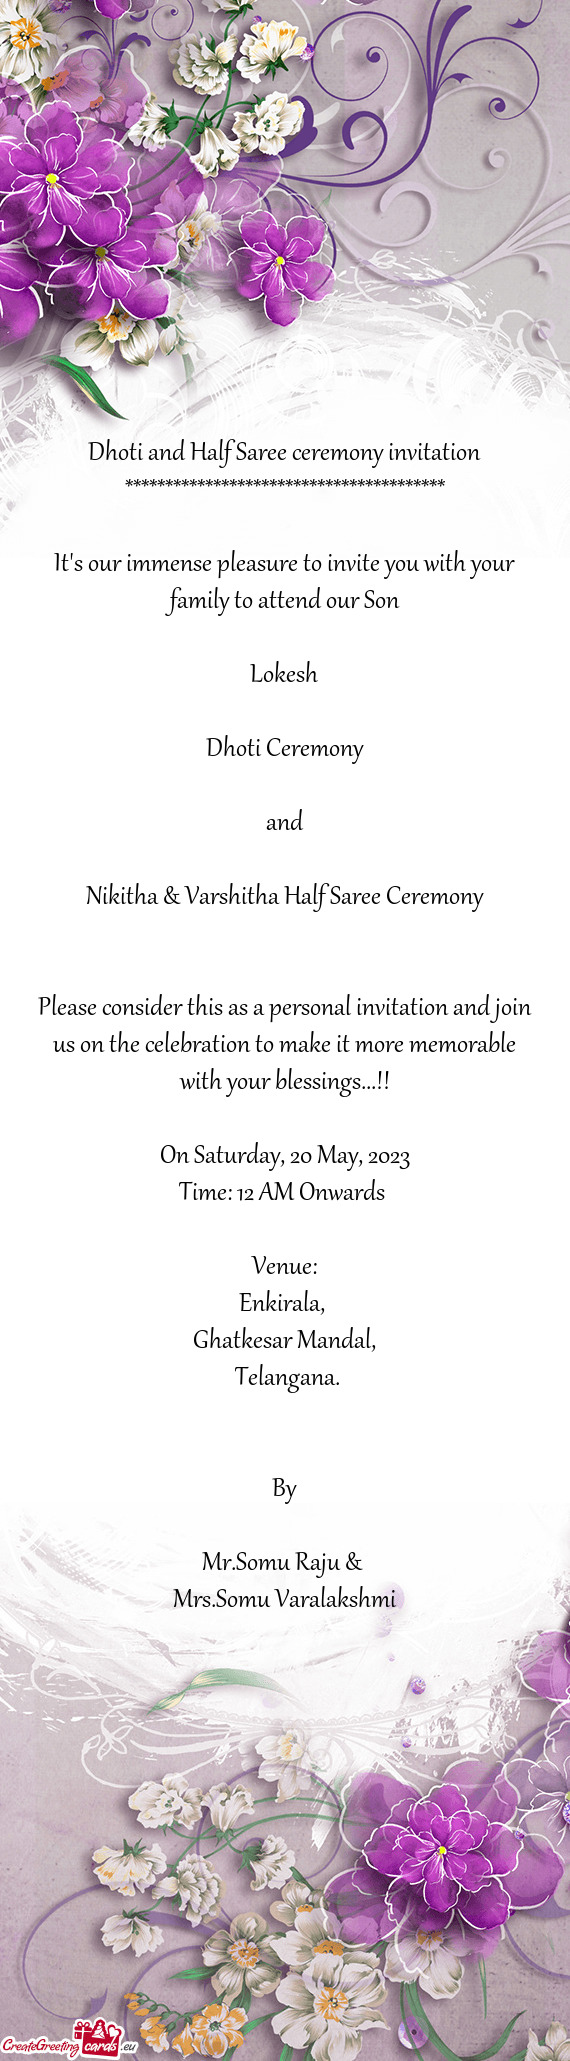 Nikitha & Varshitha Half Saree Ceremony